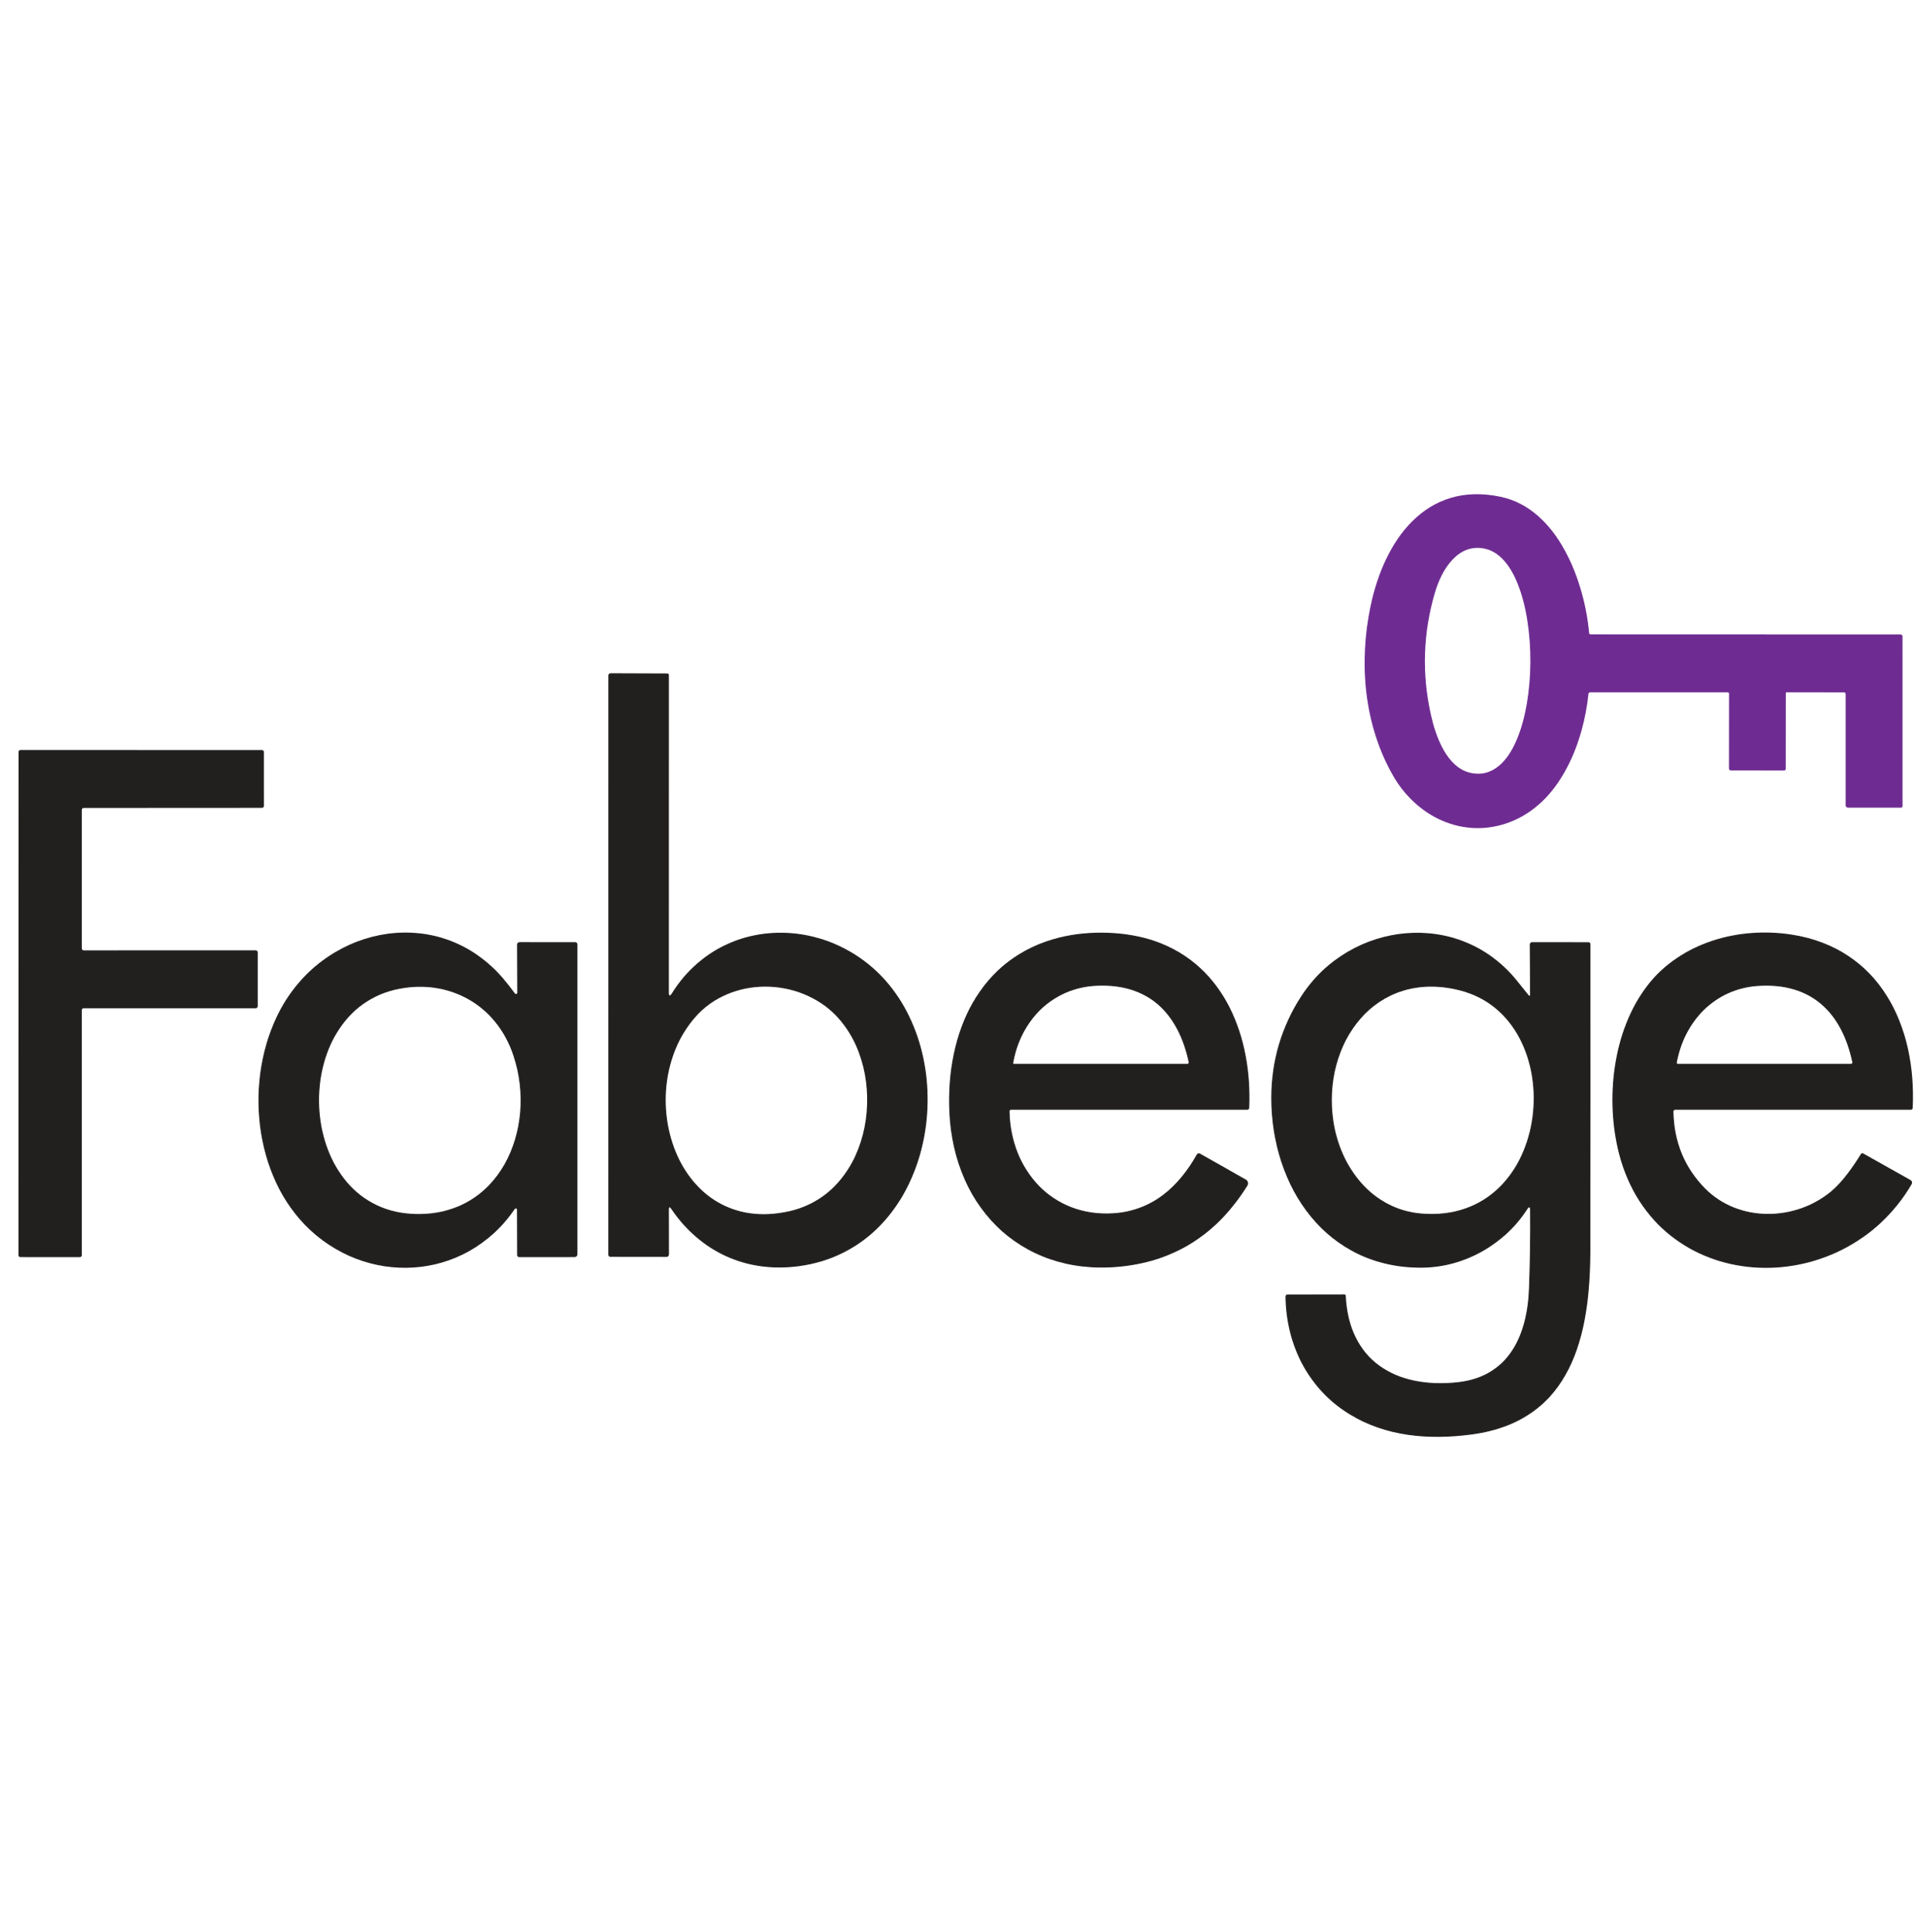 Fabege Logo Transparent Image